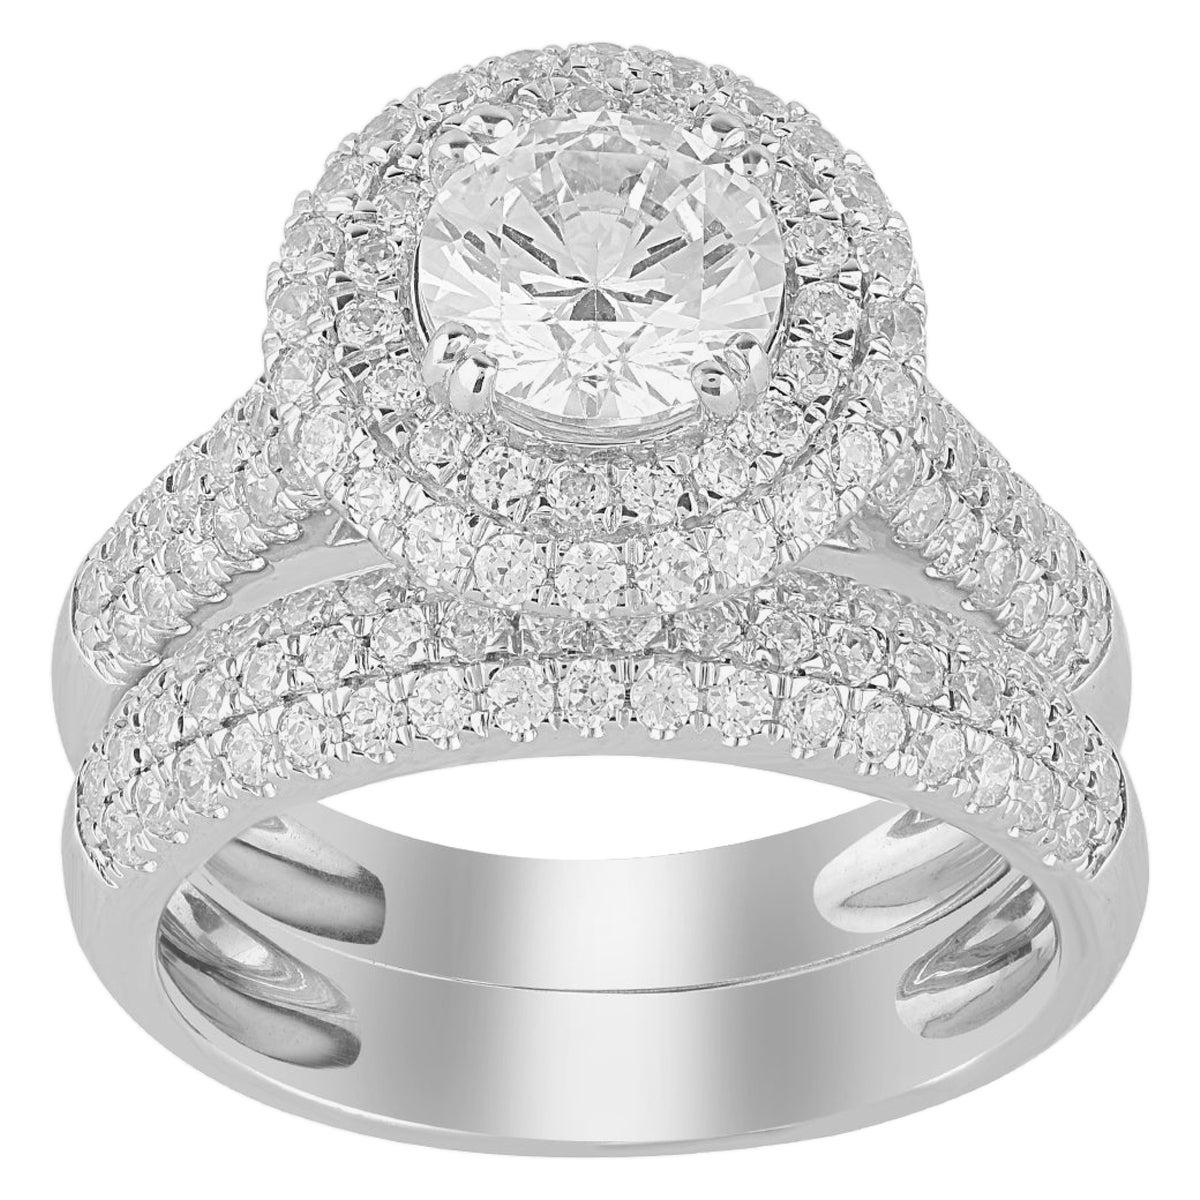 TJD 3.00 Carat Round Diamond 18 Karat White Gold Stackable Bridal Set Ring